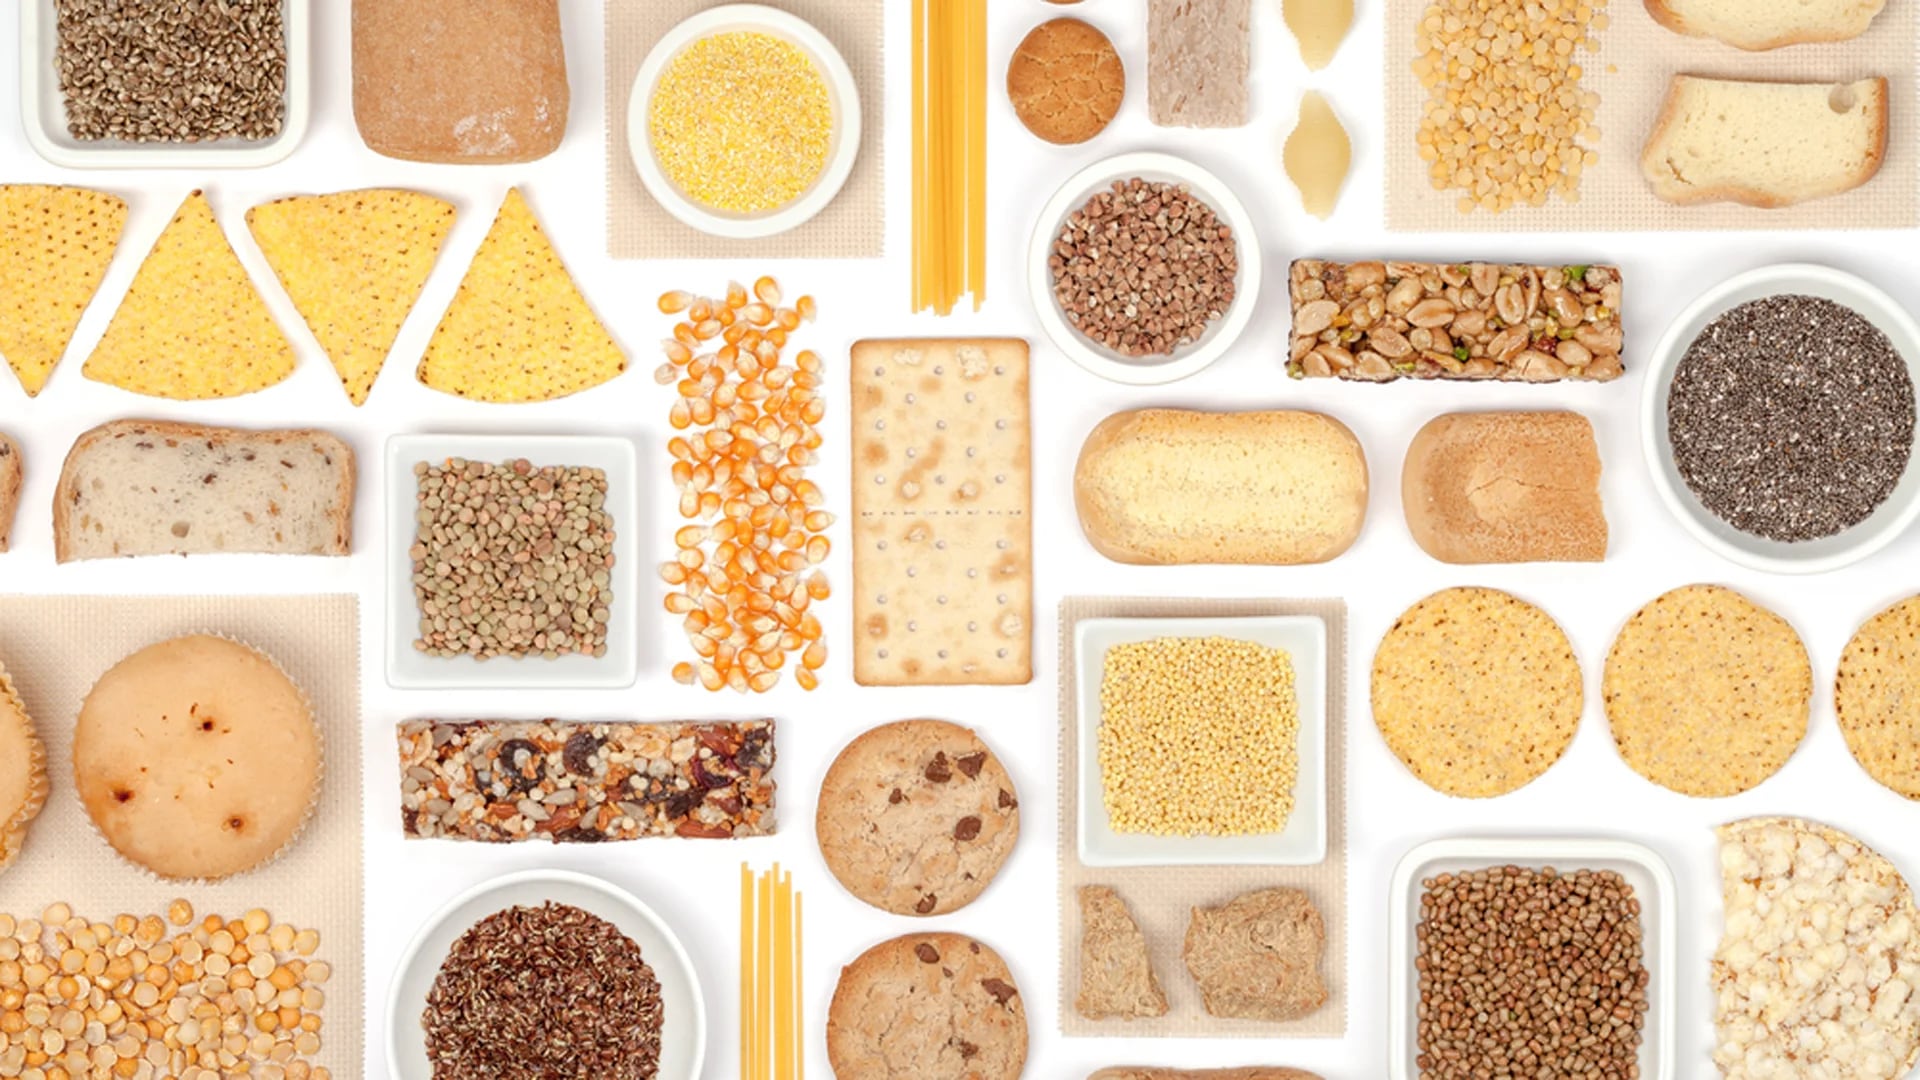 Hay muchos alimentos sin TACC, ricos, que se pueden incluir a la dieta celíaca (Shutterstock)